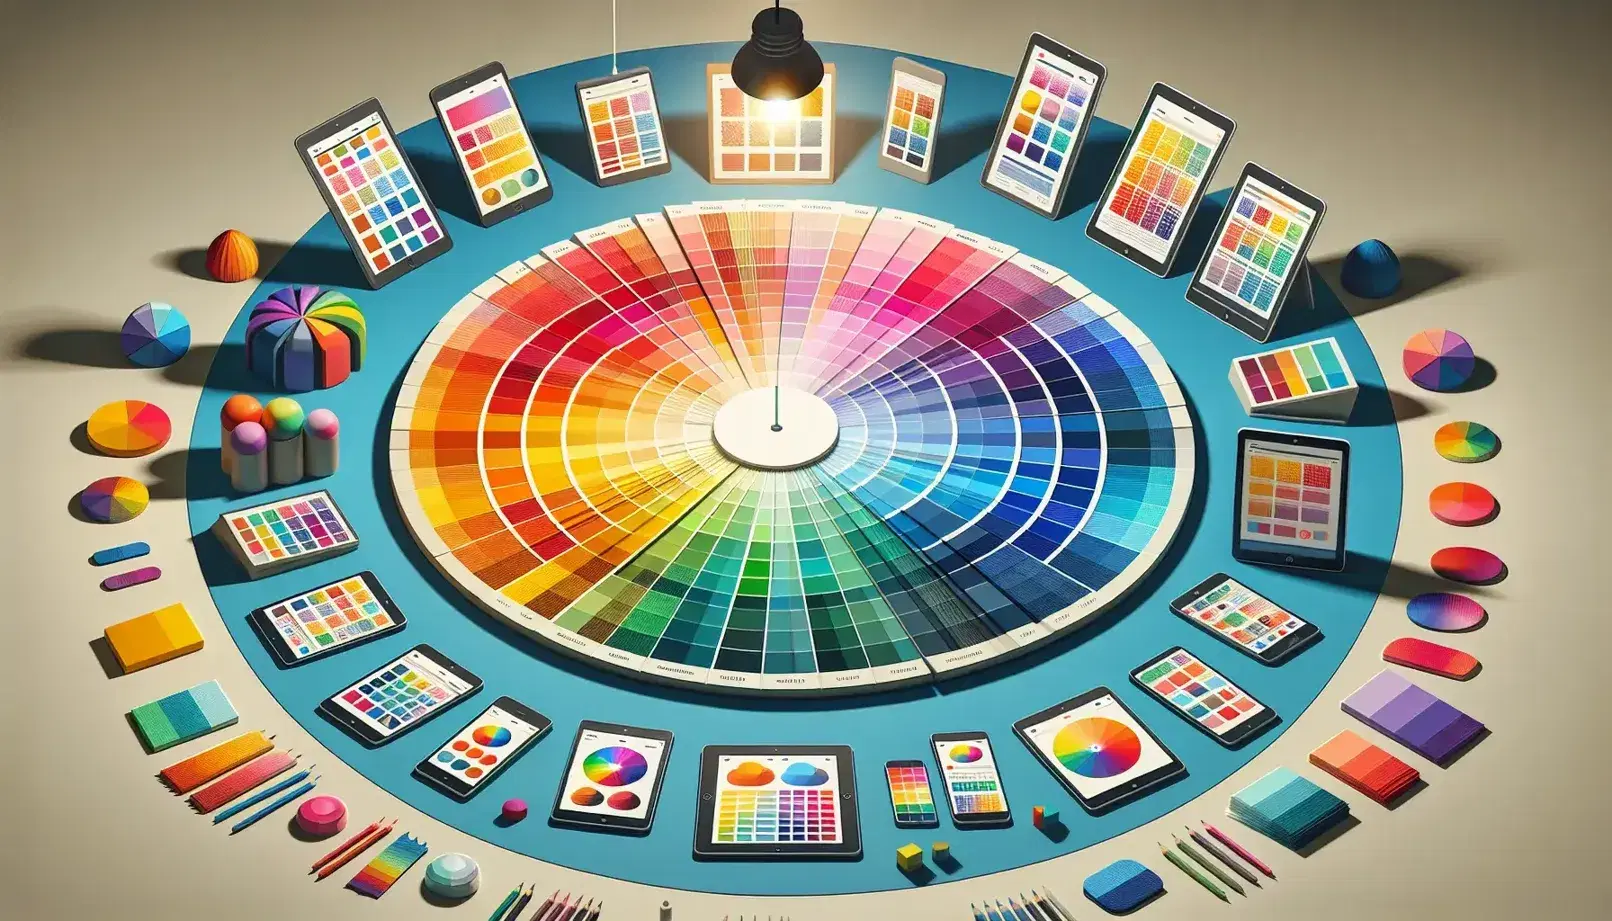 Rueda de colores con segmentos de colores primarios, secundarios y terciarios, rodeada por dispositivos electrónicos mostrando interfaces de usuario y una bombilla encendida arriba.